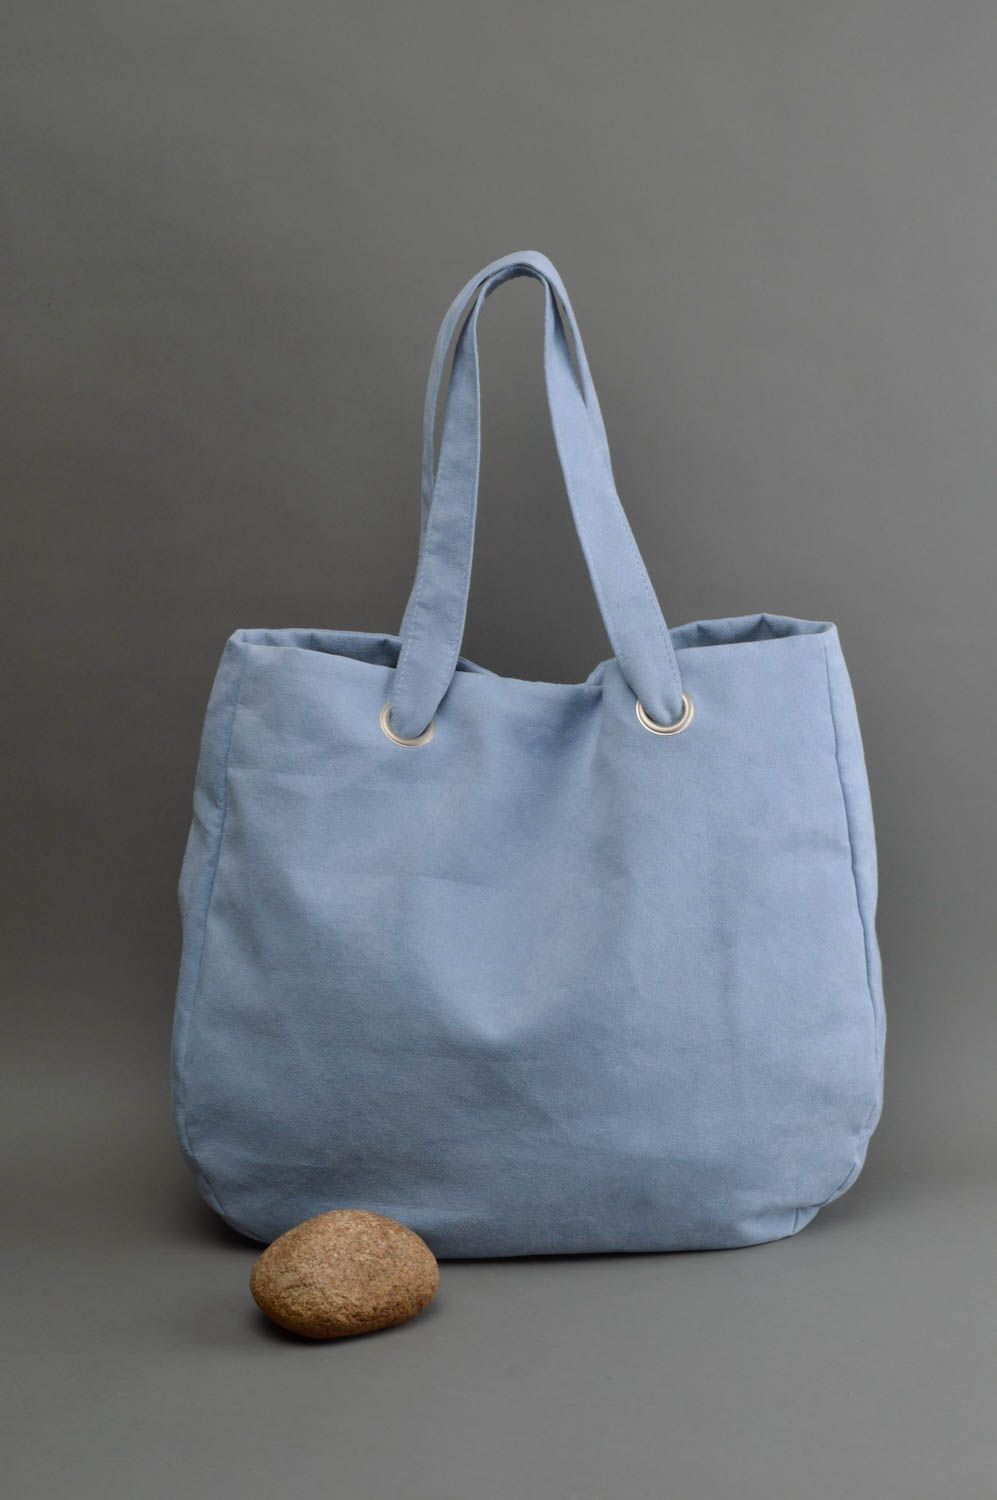 Grand sac à main en daim artificiel fait main bleu clair avec poche intérieure photo 1